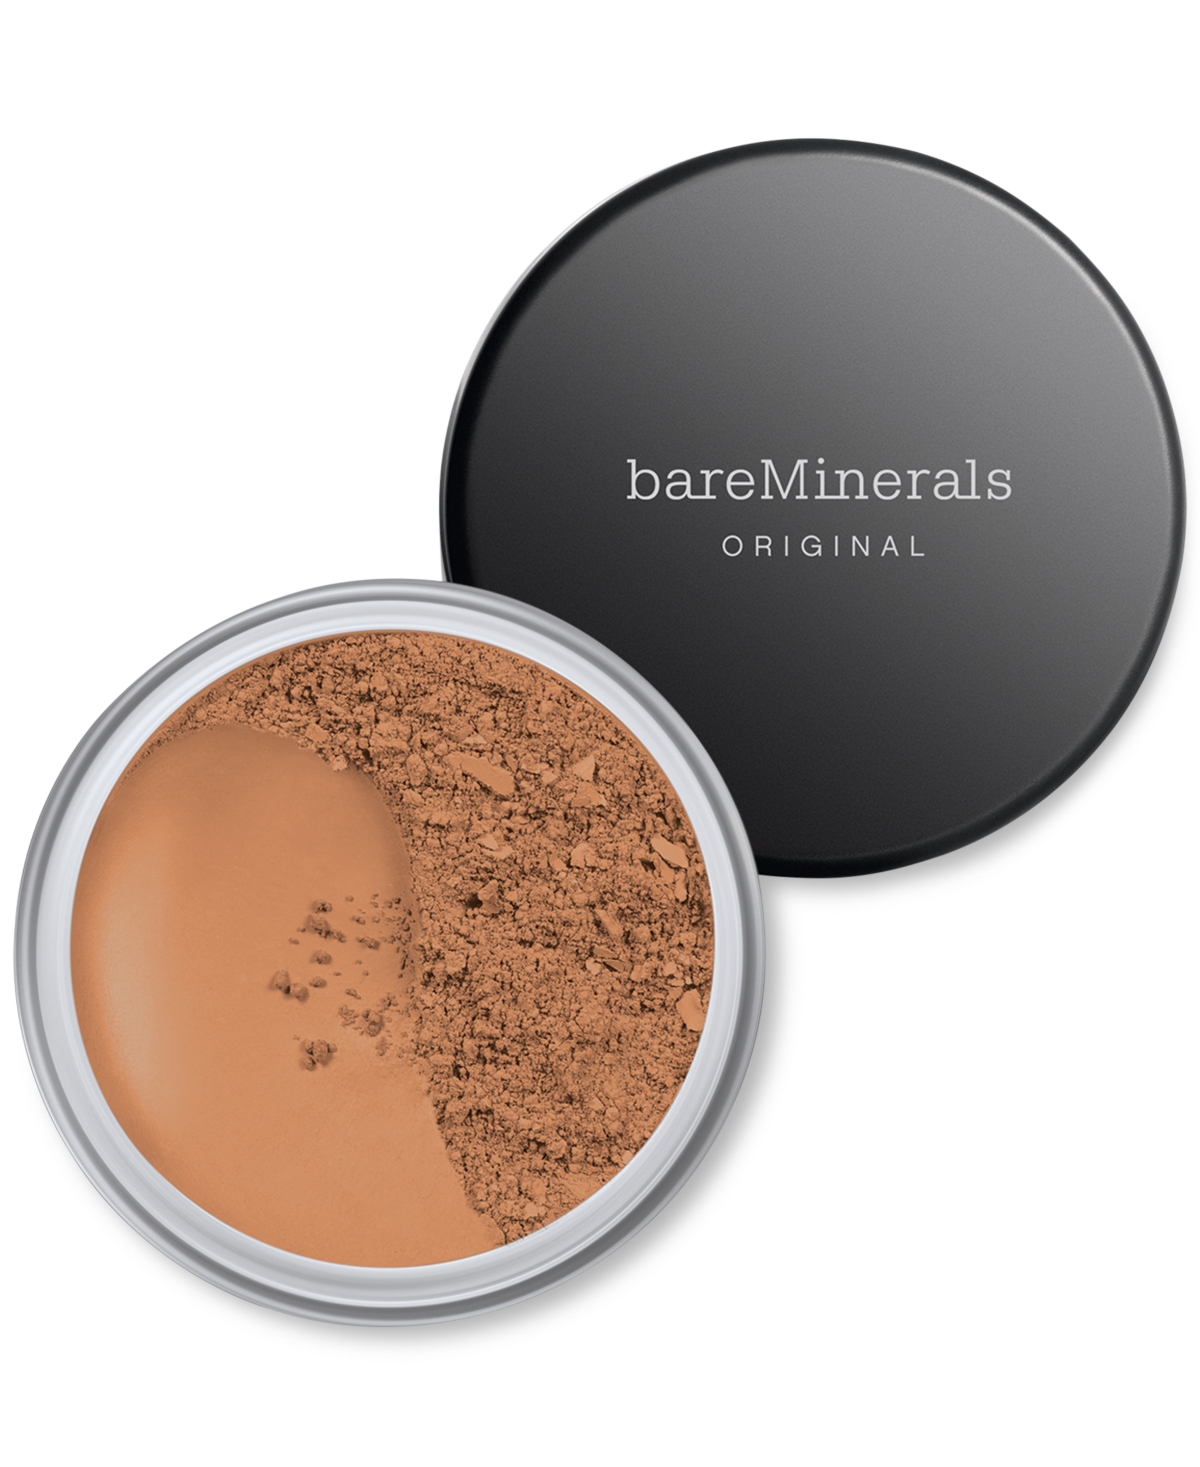 Bareminerals Original Loose Powder Foundation Spf 15 In Medium Dark  - For Dark Skin With Cool T